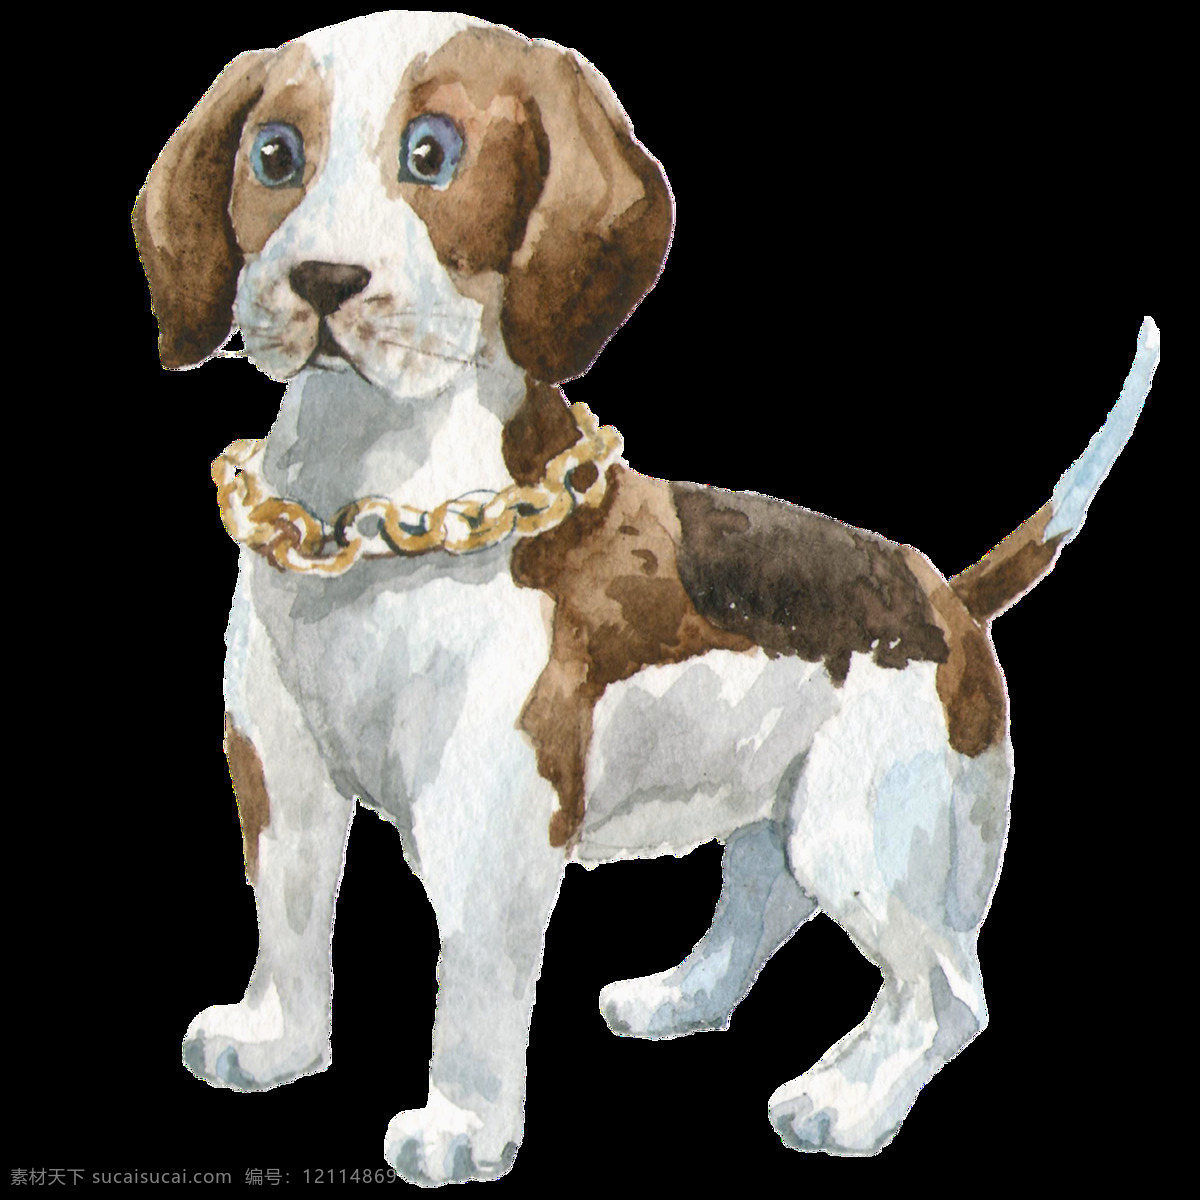 棕色 小狗 透明 装饰 图案 呆萌 大眼 可爱 宠物 透明素材 免扣素材 装饰图片